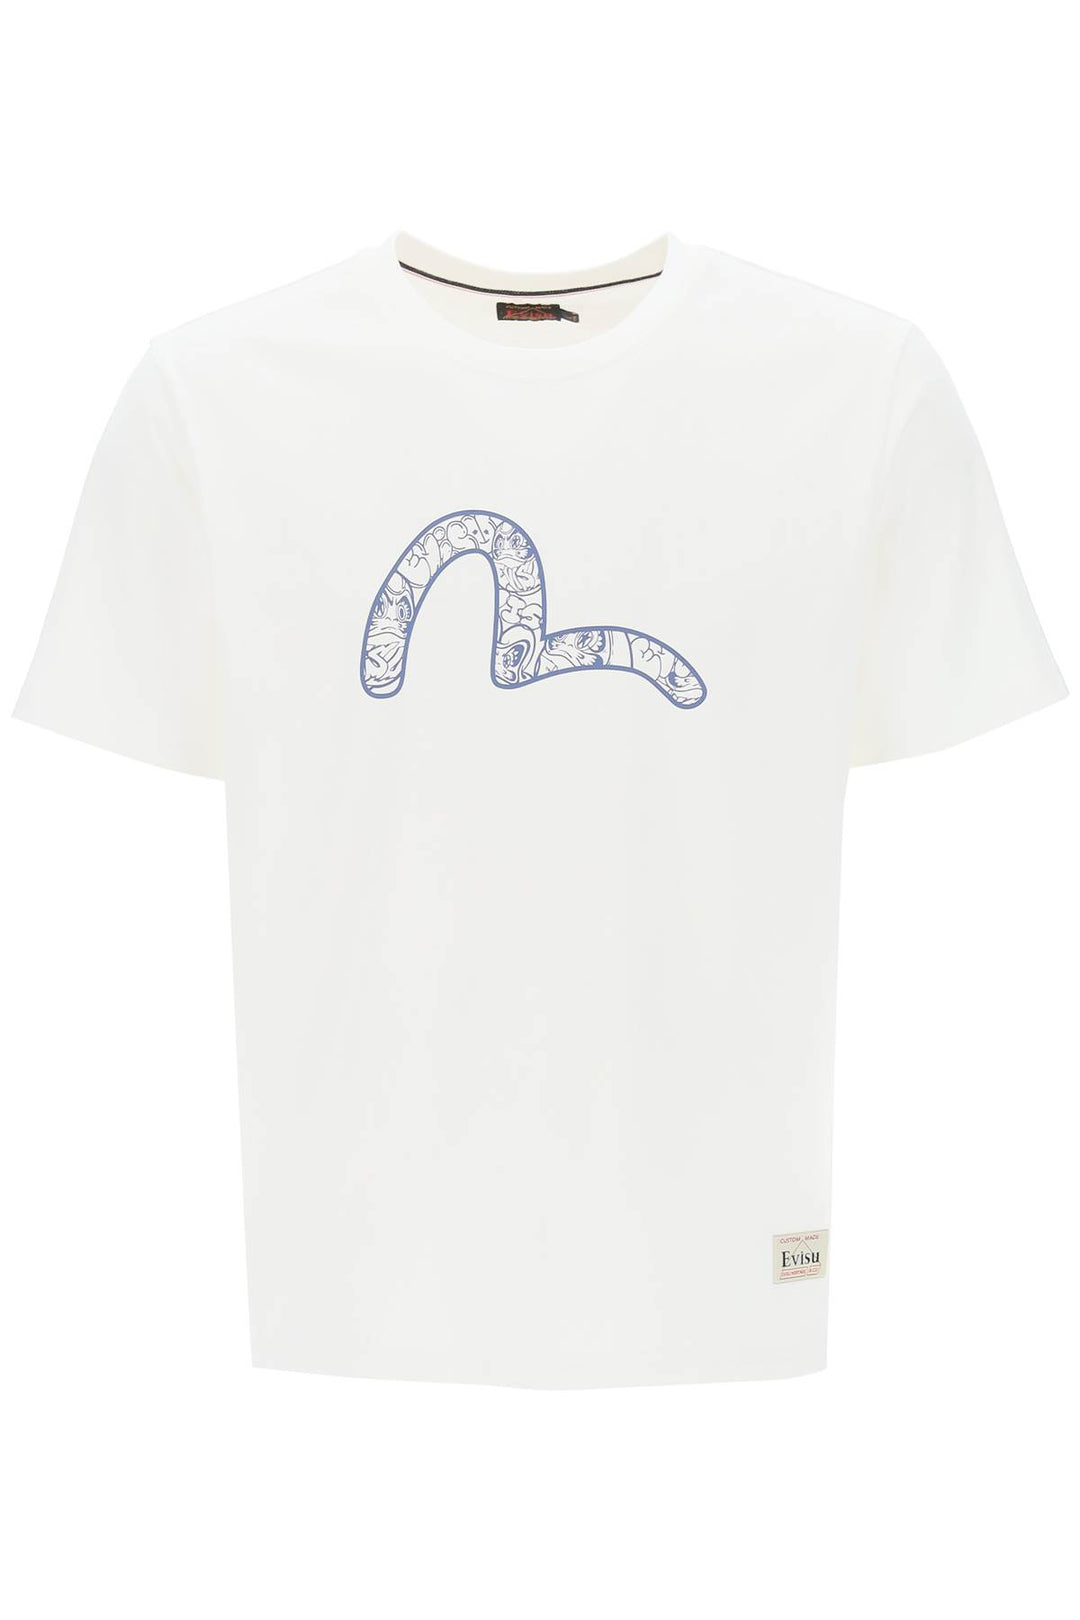 T Shirt Con Stampa "Graffiti Daruma" - Evisu - Uomo